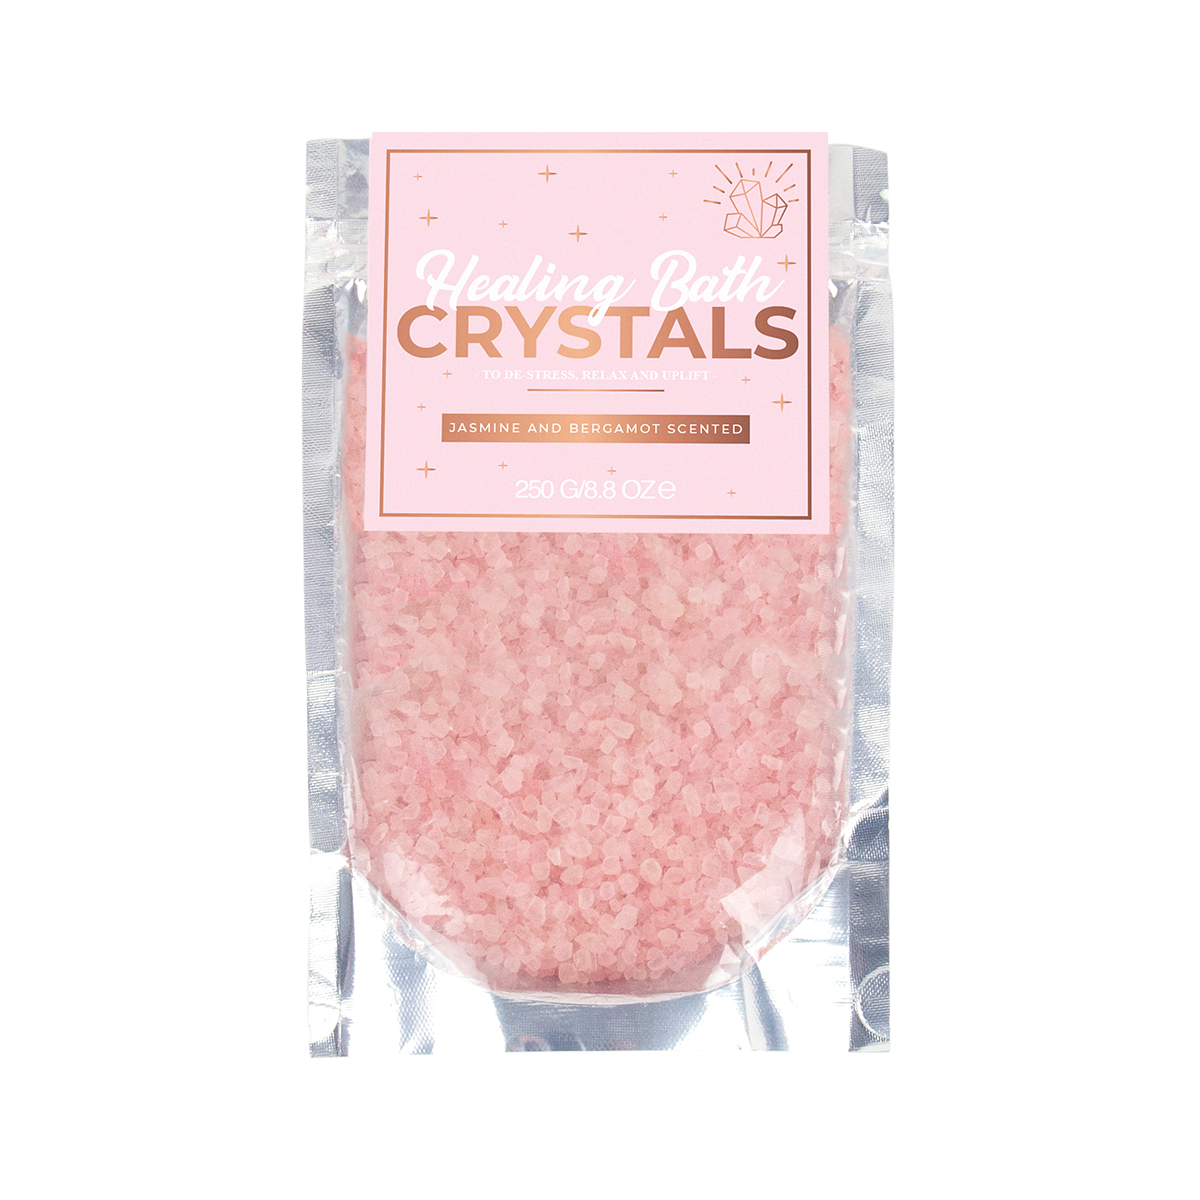 Healing Bath Crystals